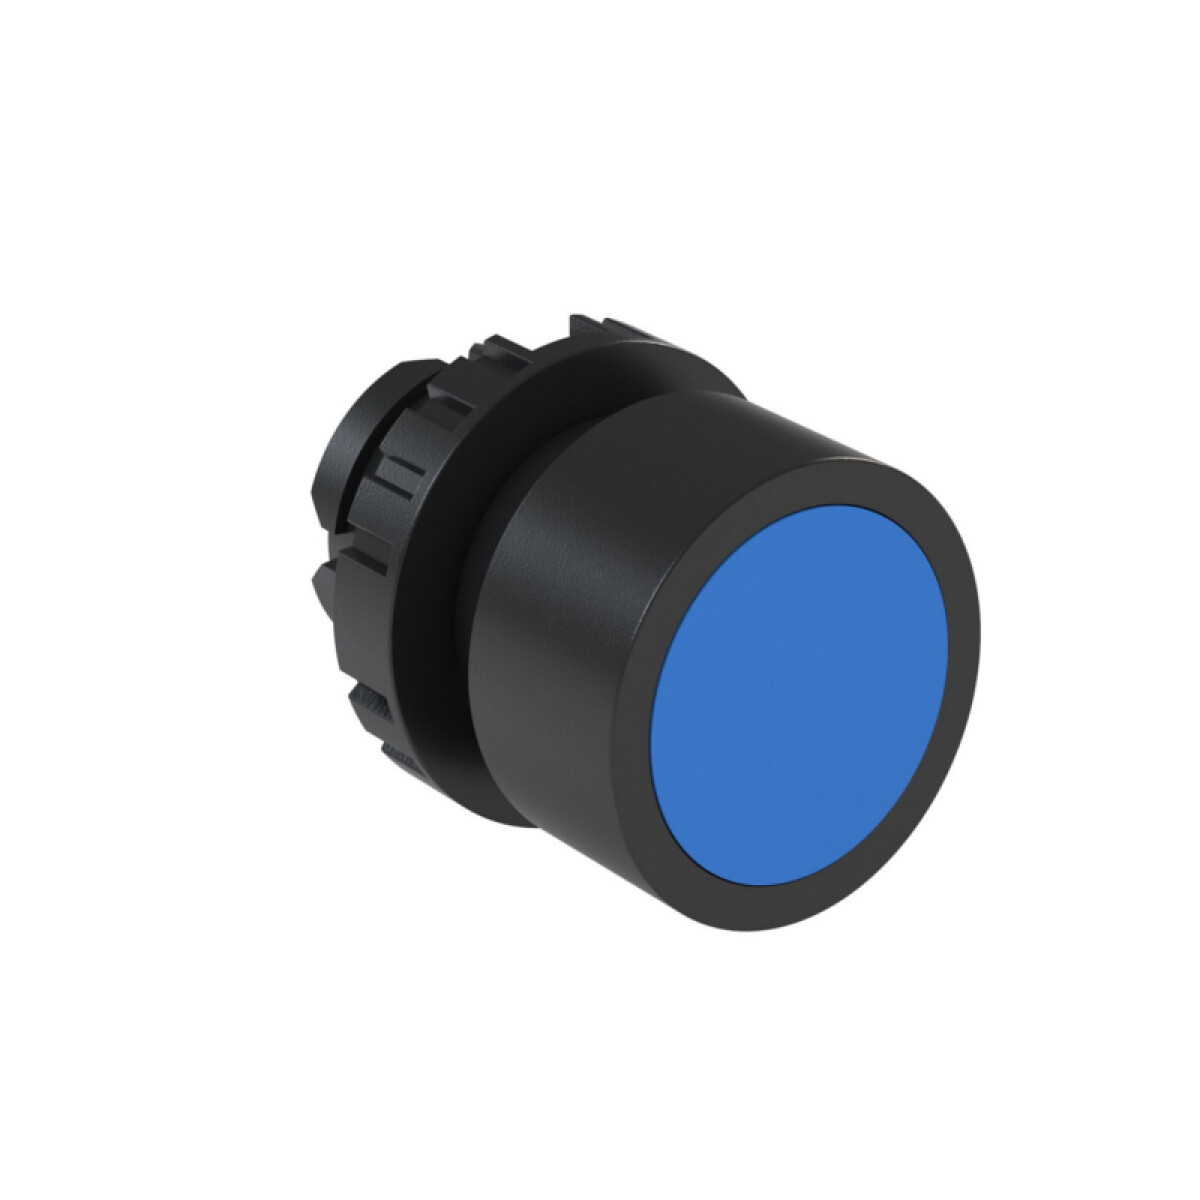 Cabezal pulsador rasante azul Ø22mm IP66, BF4 - WE5014 